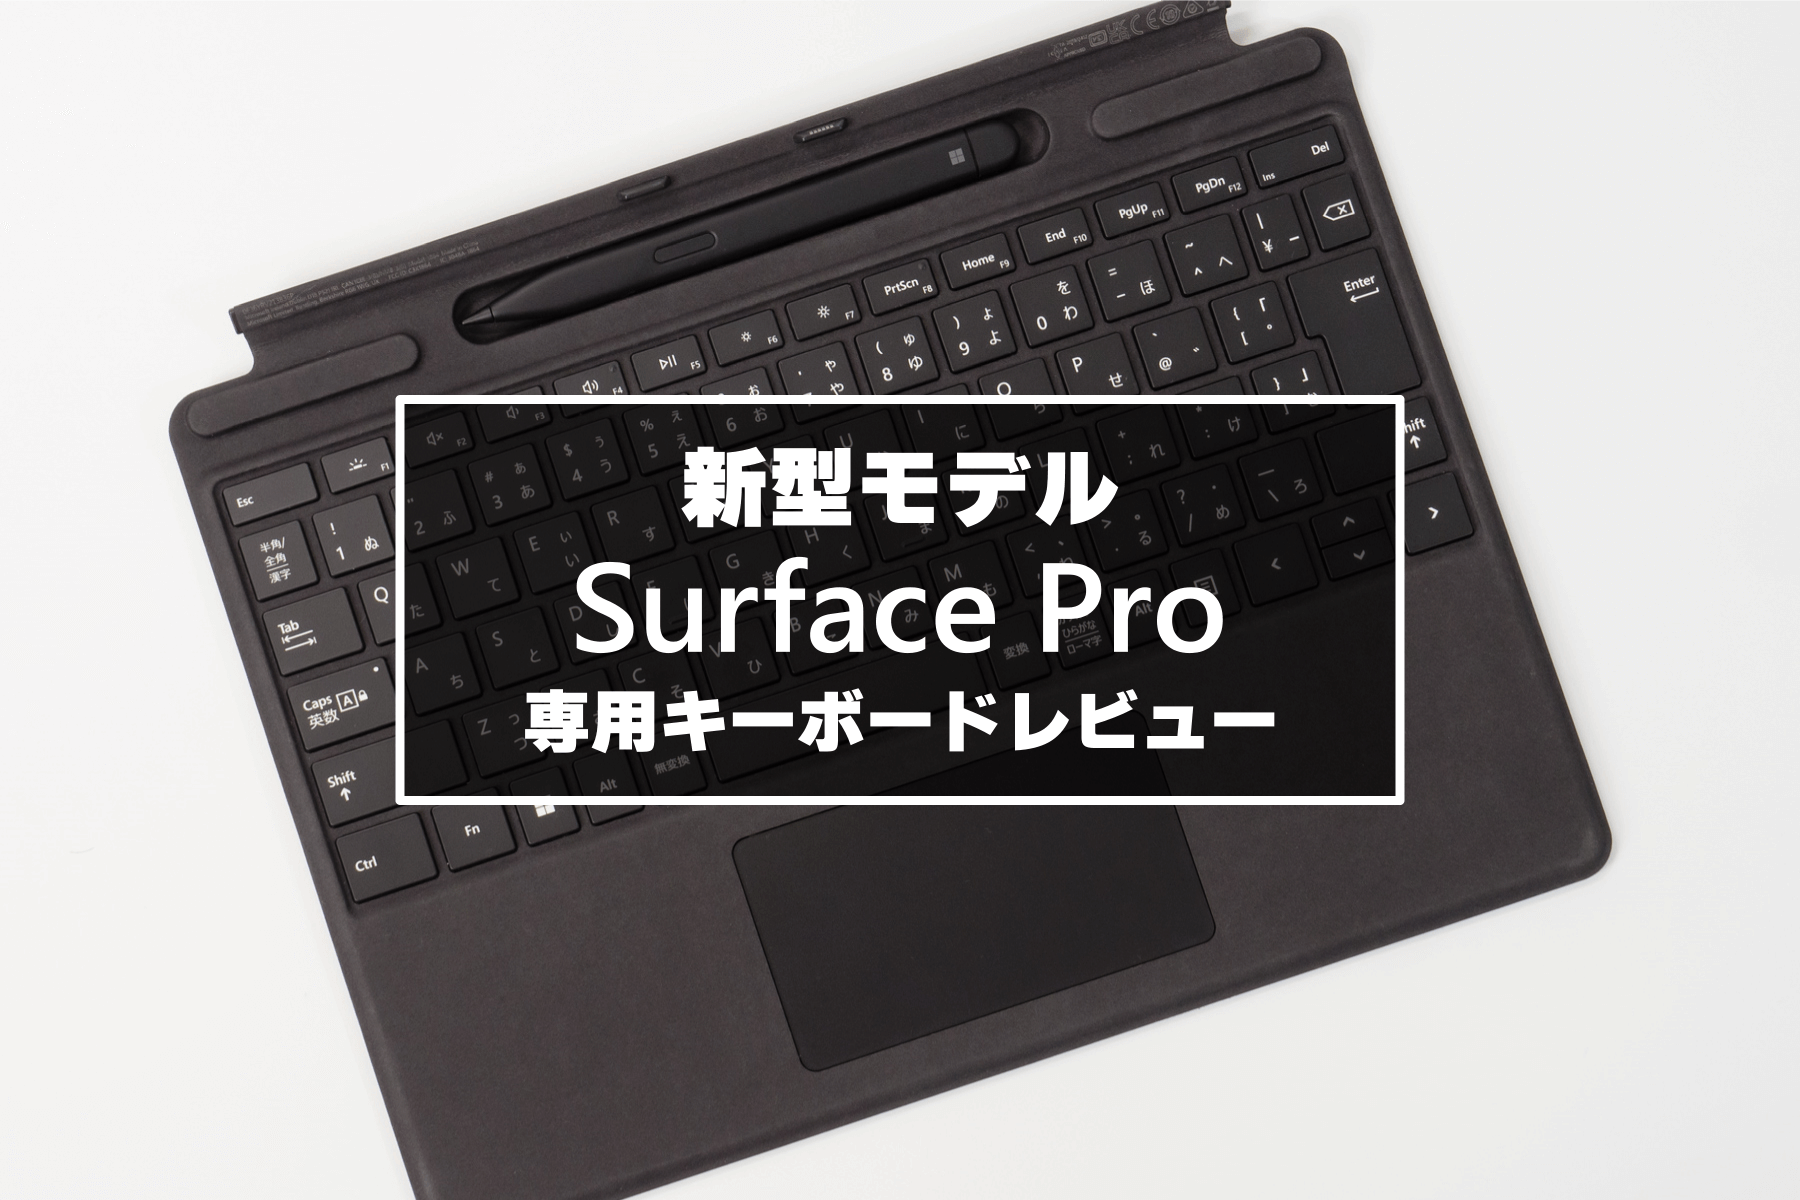 クーポンで割引 マイクロソフト Signature Pro Surface 8XA-00019 PC周辺機器